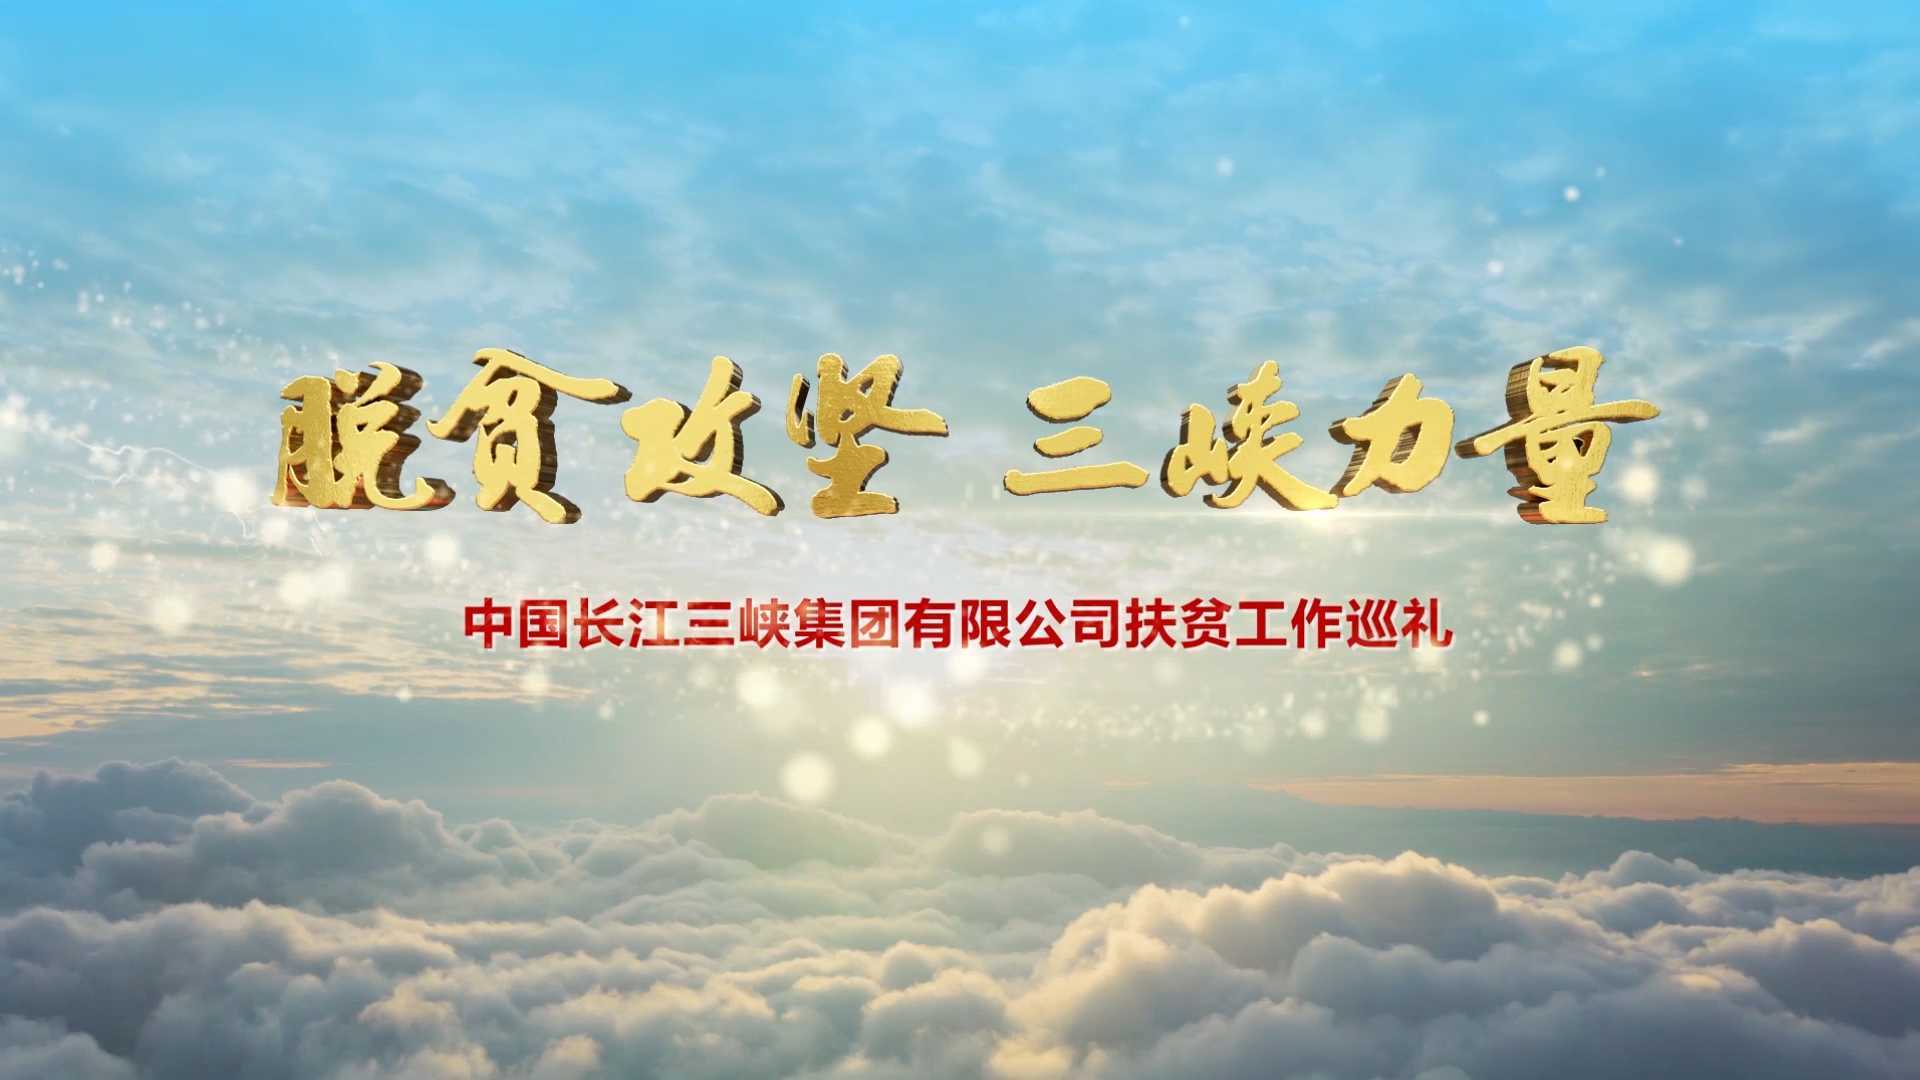 《脱贫攻坚 三峡力量》中国长江三峡集团有限公司扶贫工作巡礼——传奇视界出品